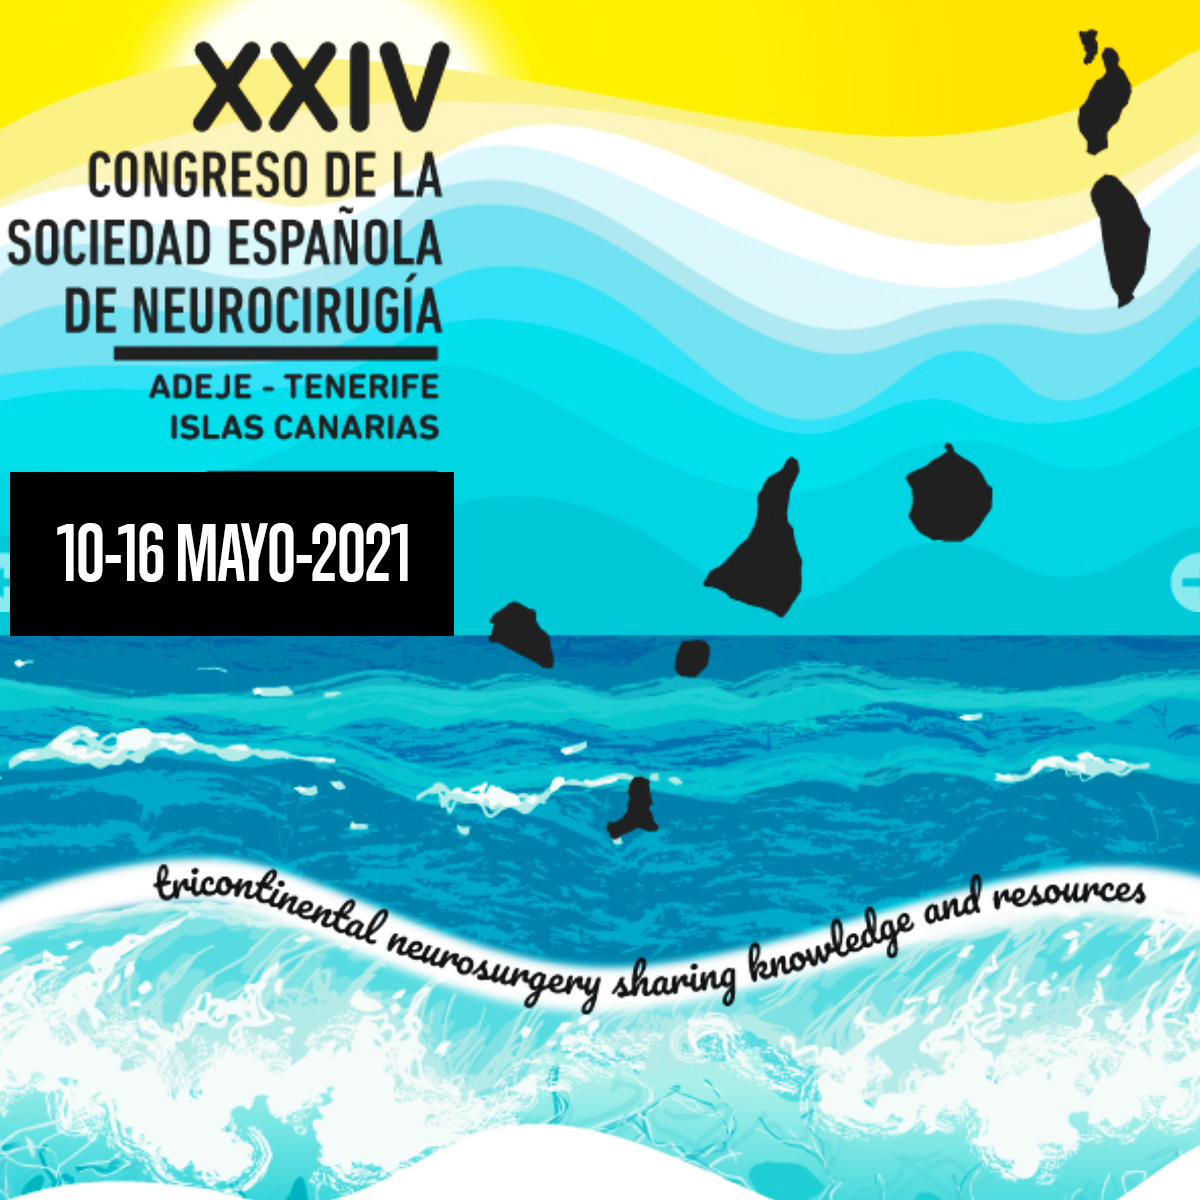 XXIV Congreso de la Sociedad Española de Neurocirugía